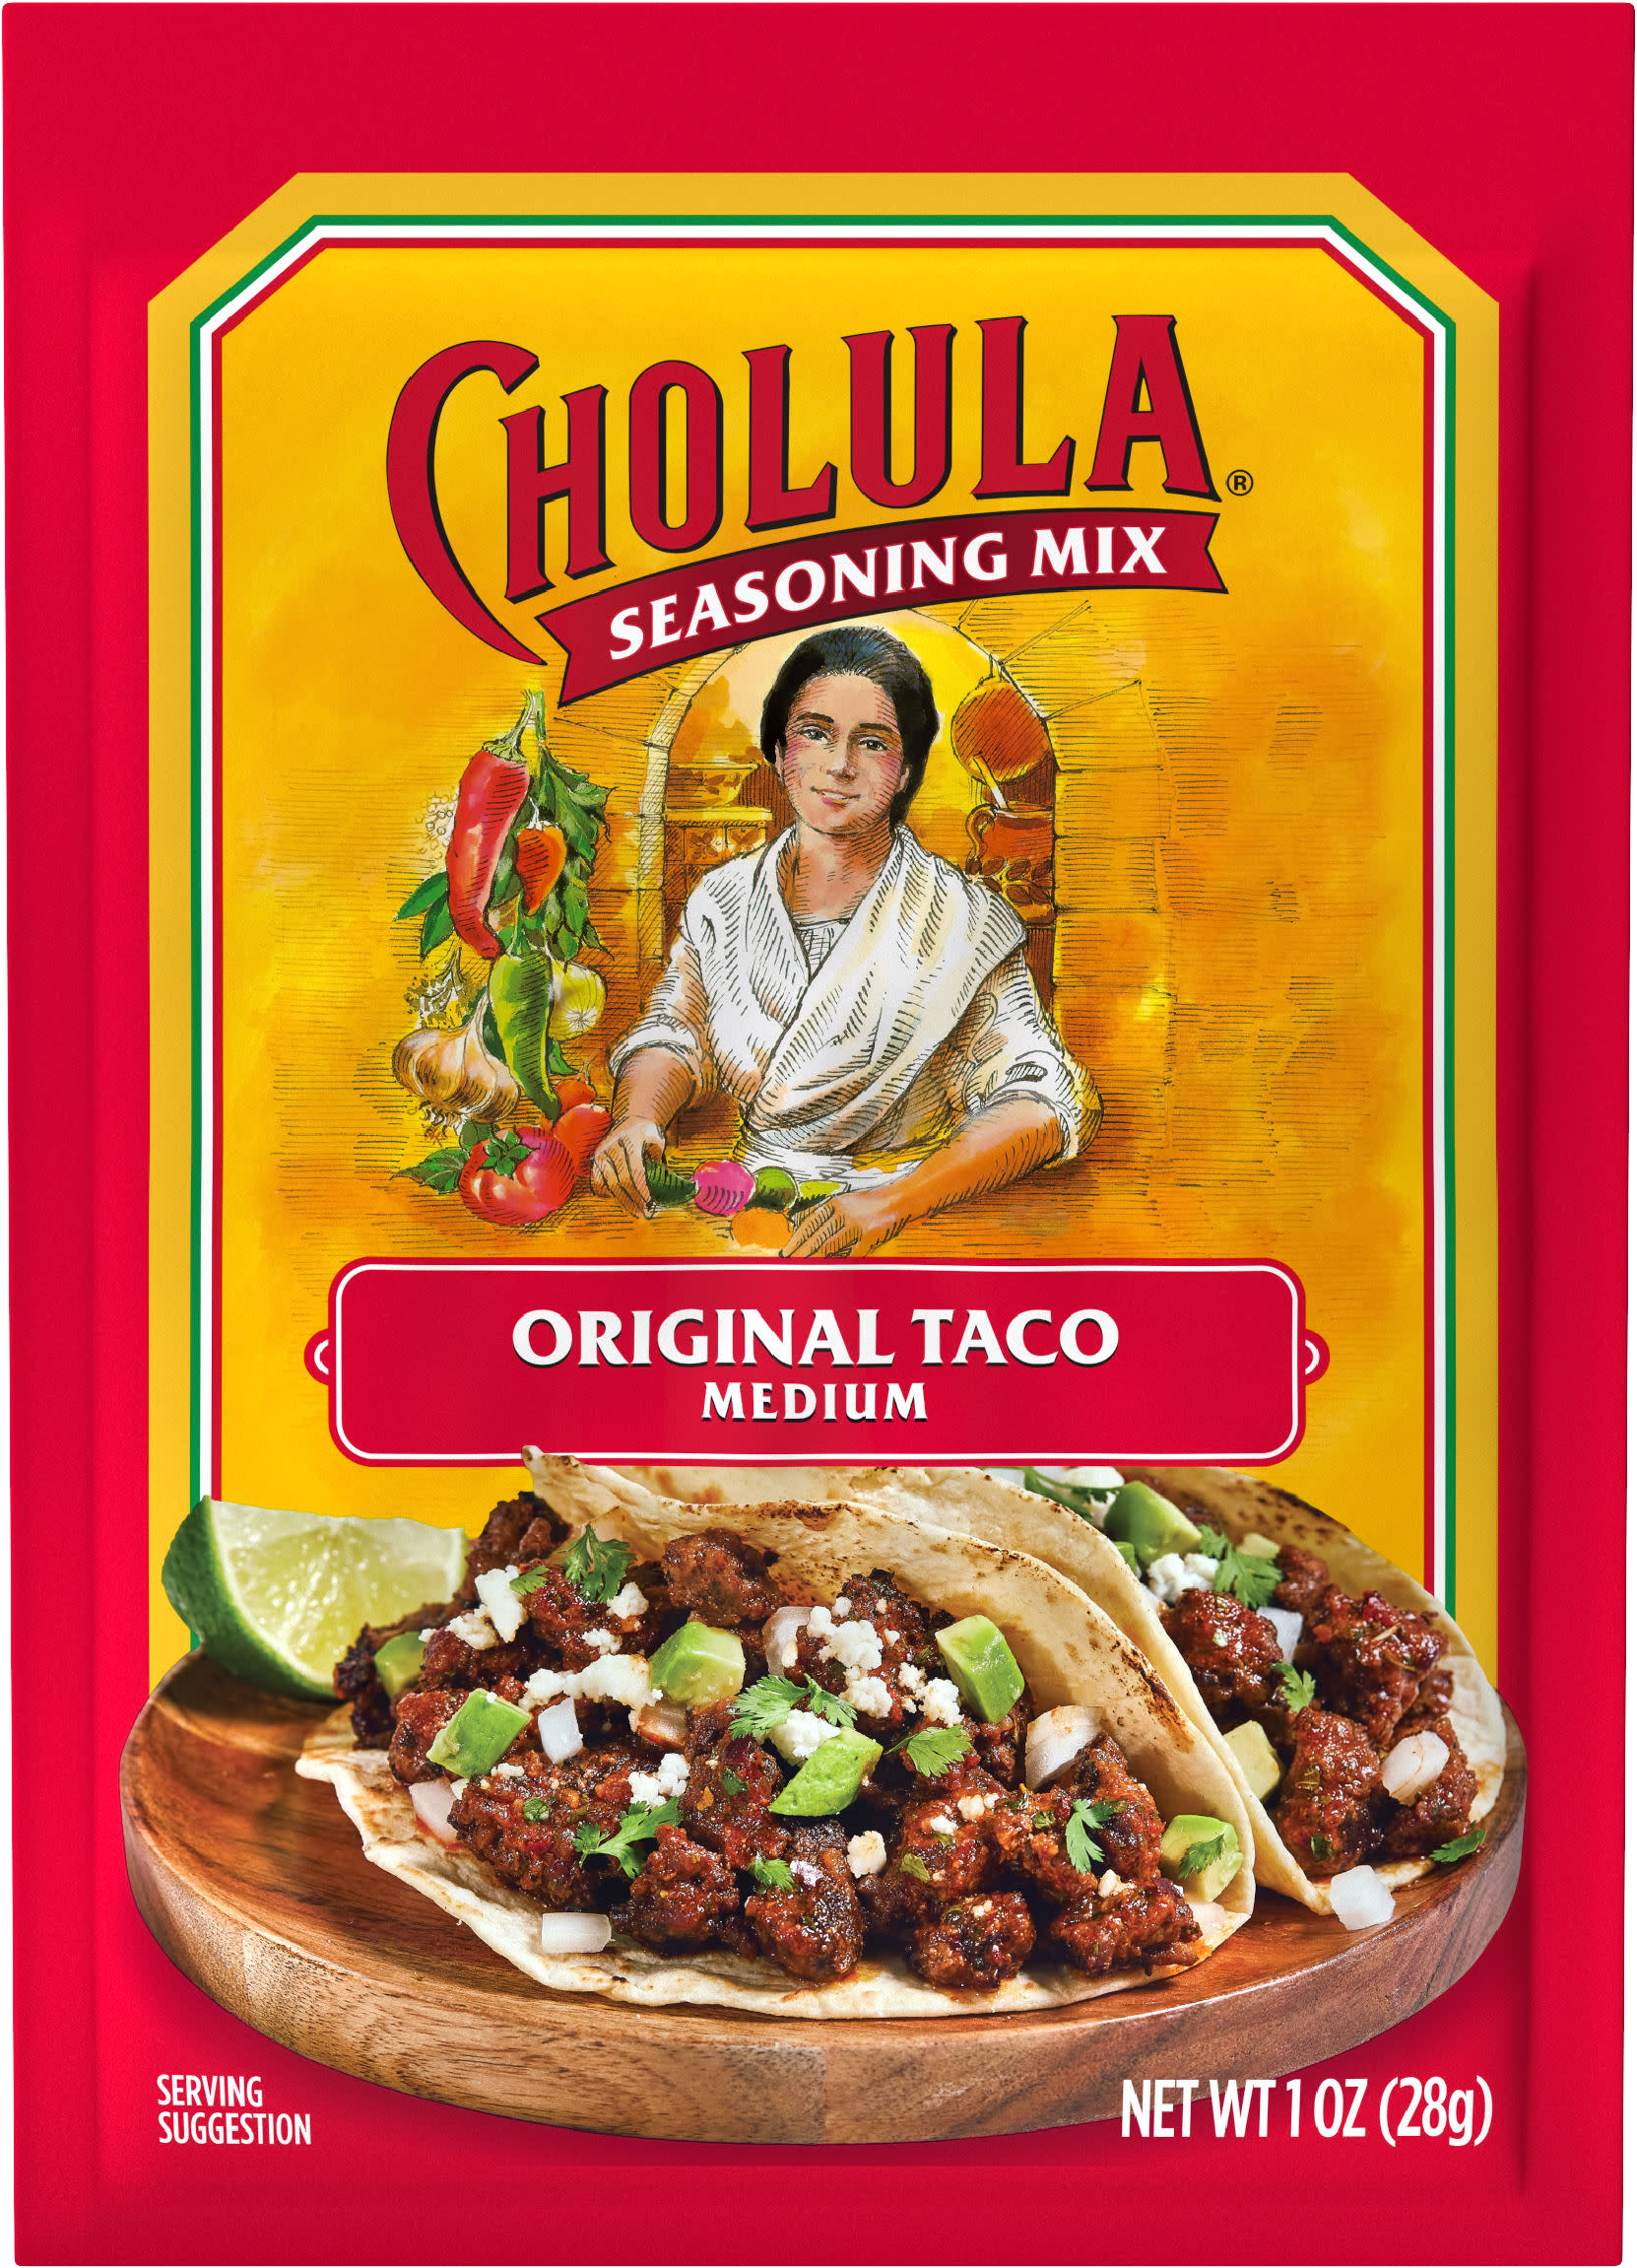 Cholula Seasoning Mix